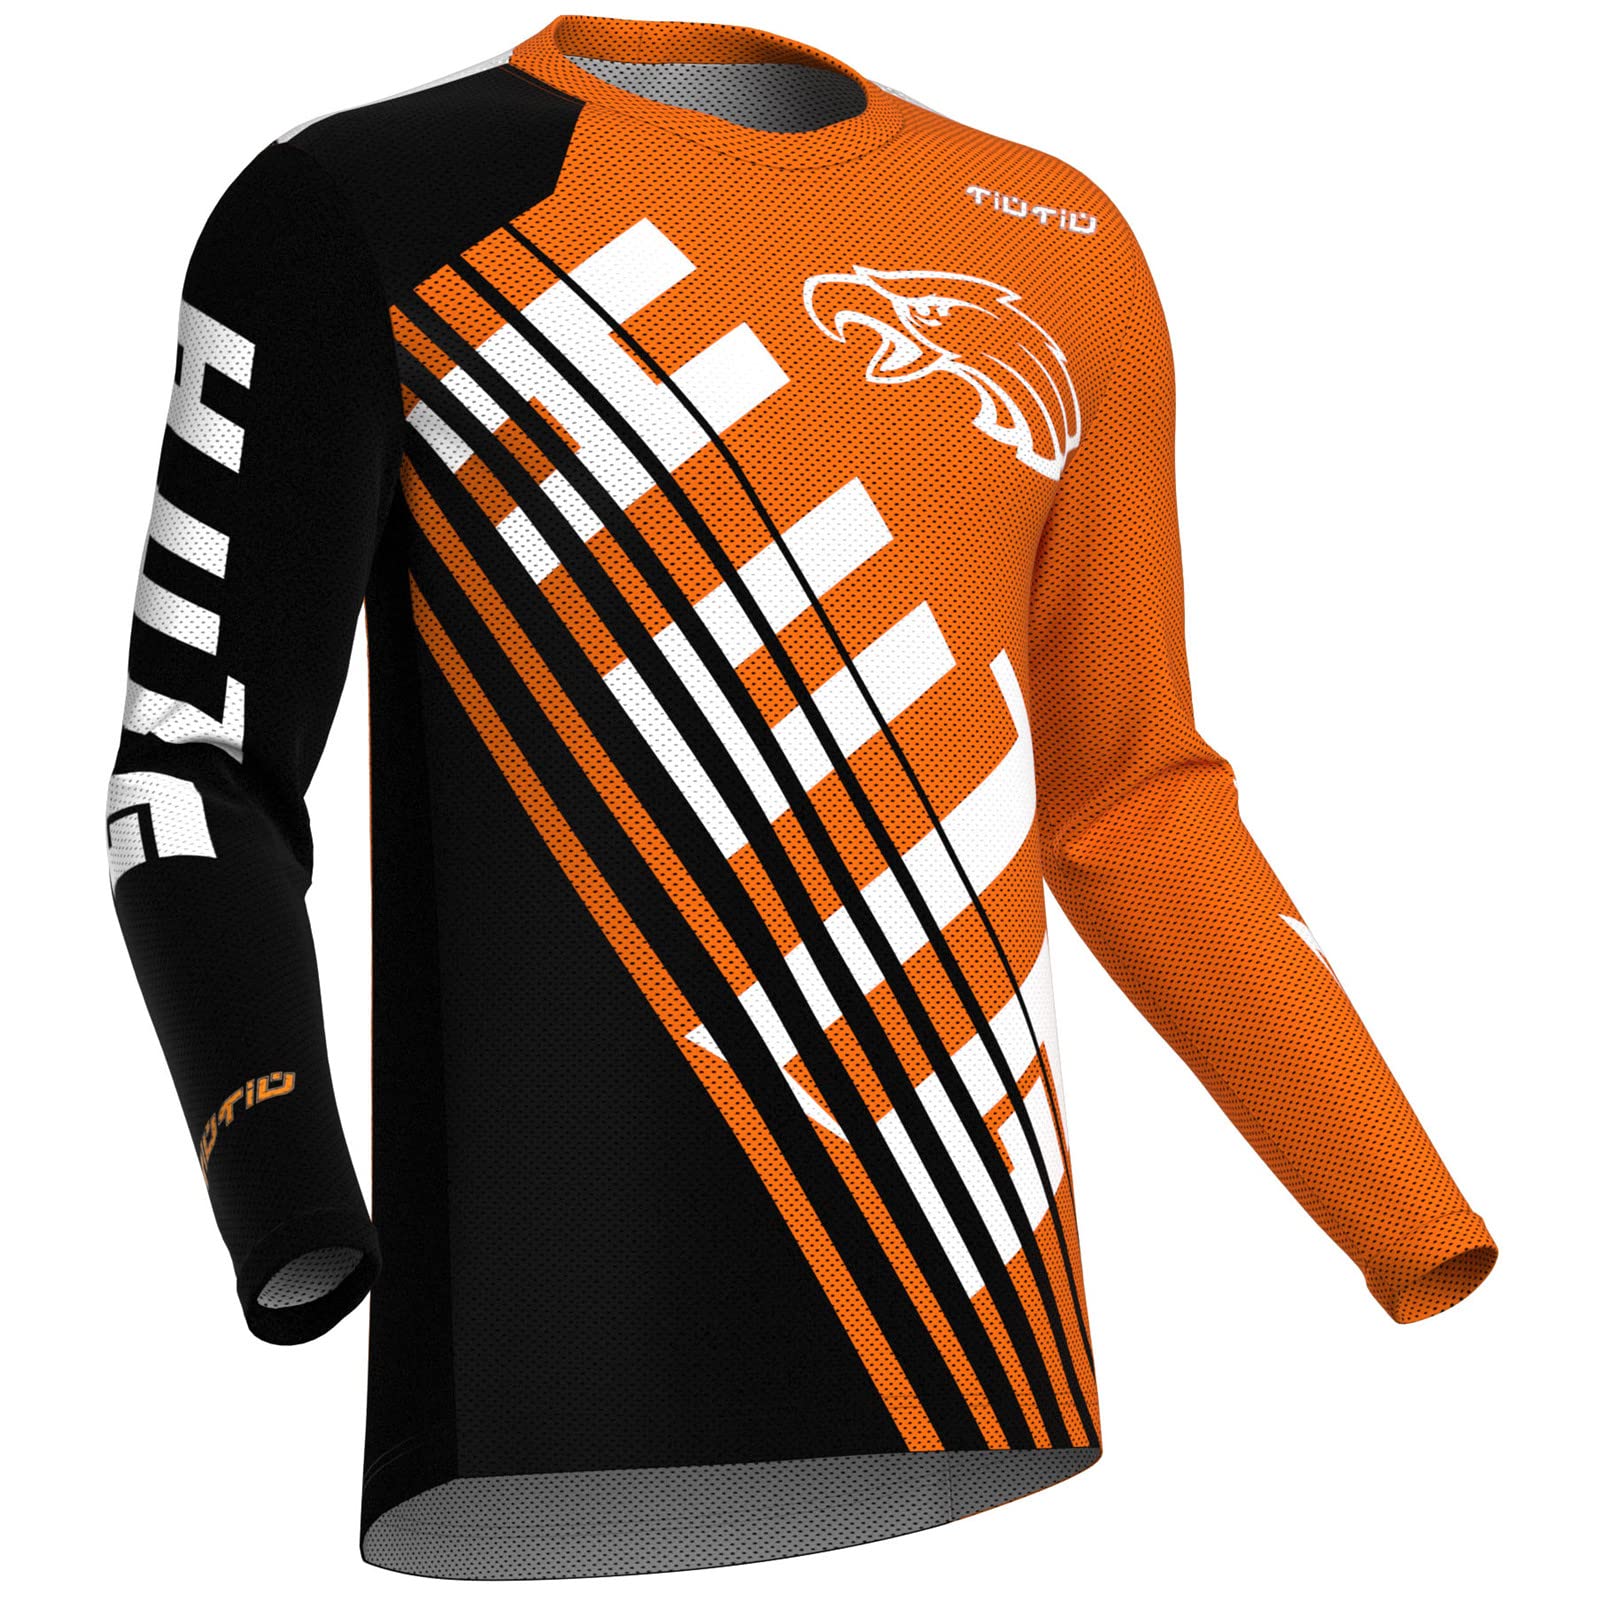 Motocross-Trikot Für Herren | MTB Mountainbike 100% Hochwertiges Polyestergewebe | Atmungsaktives Material, Schnell Trocknend, Antibakteriell |lange ÄrmelJersey (Orange,4XL) von HULG